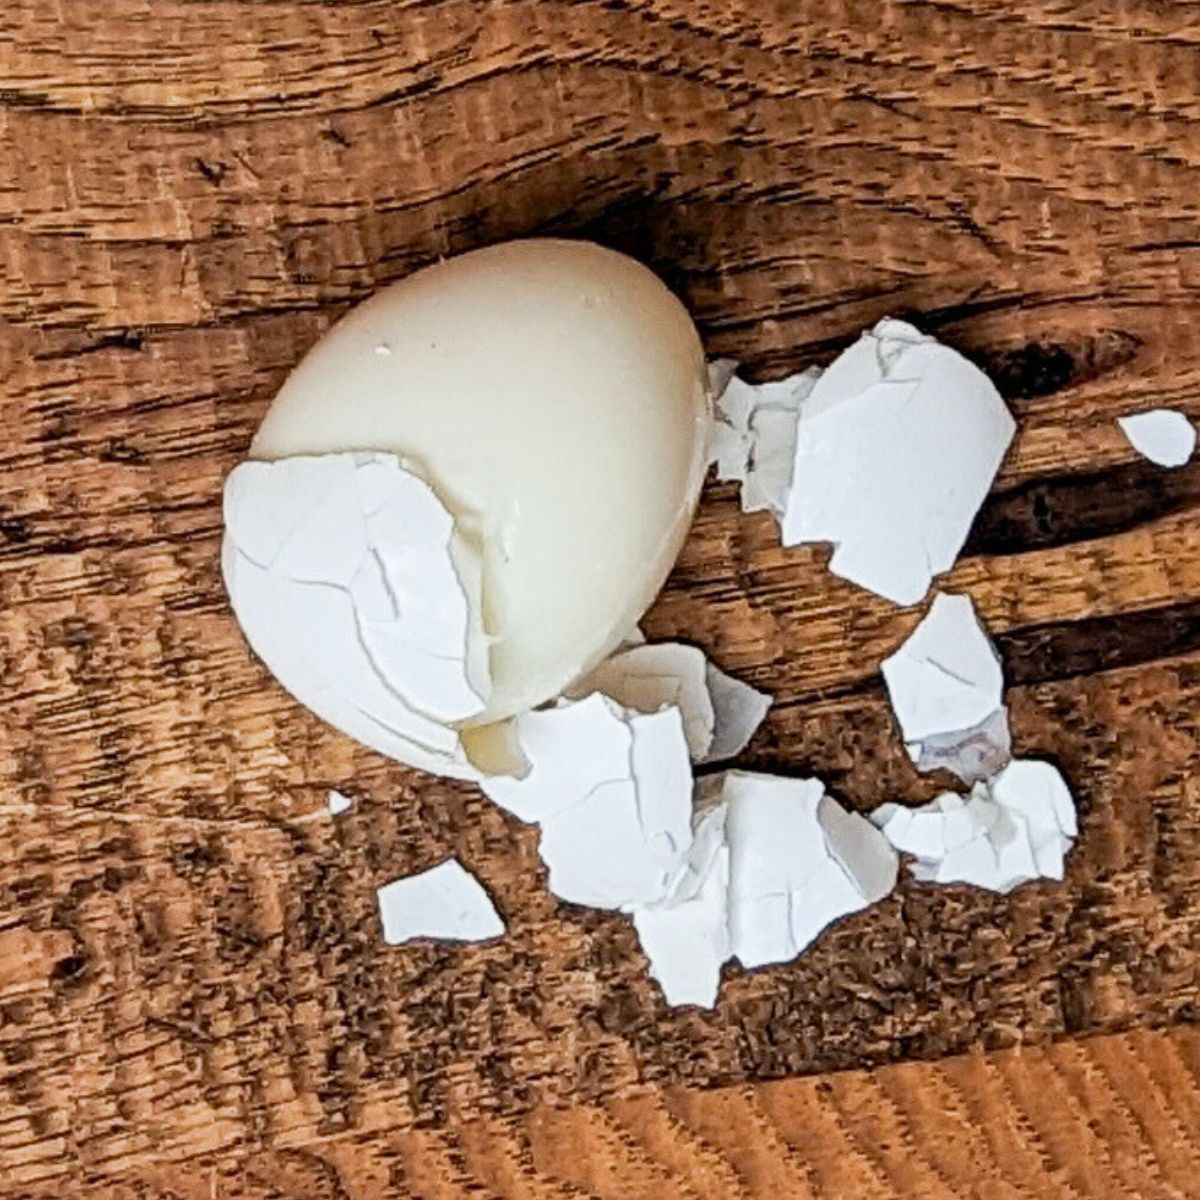 Peeling hard boiled egg. 